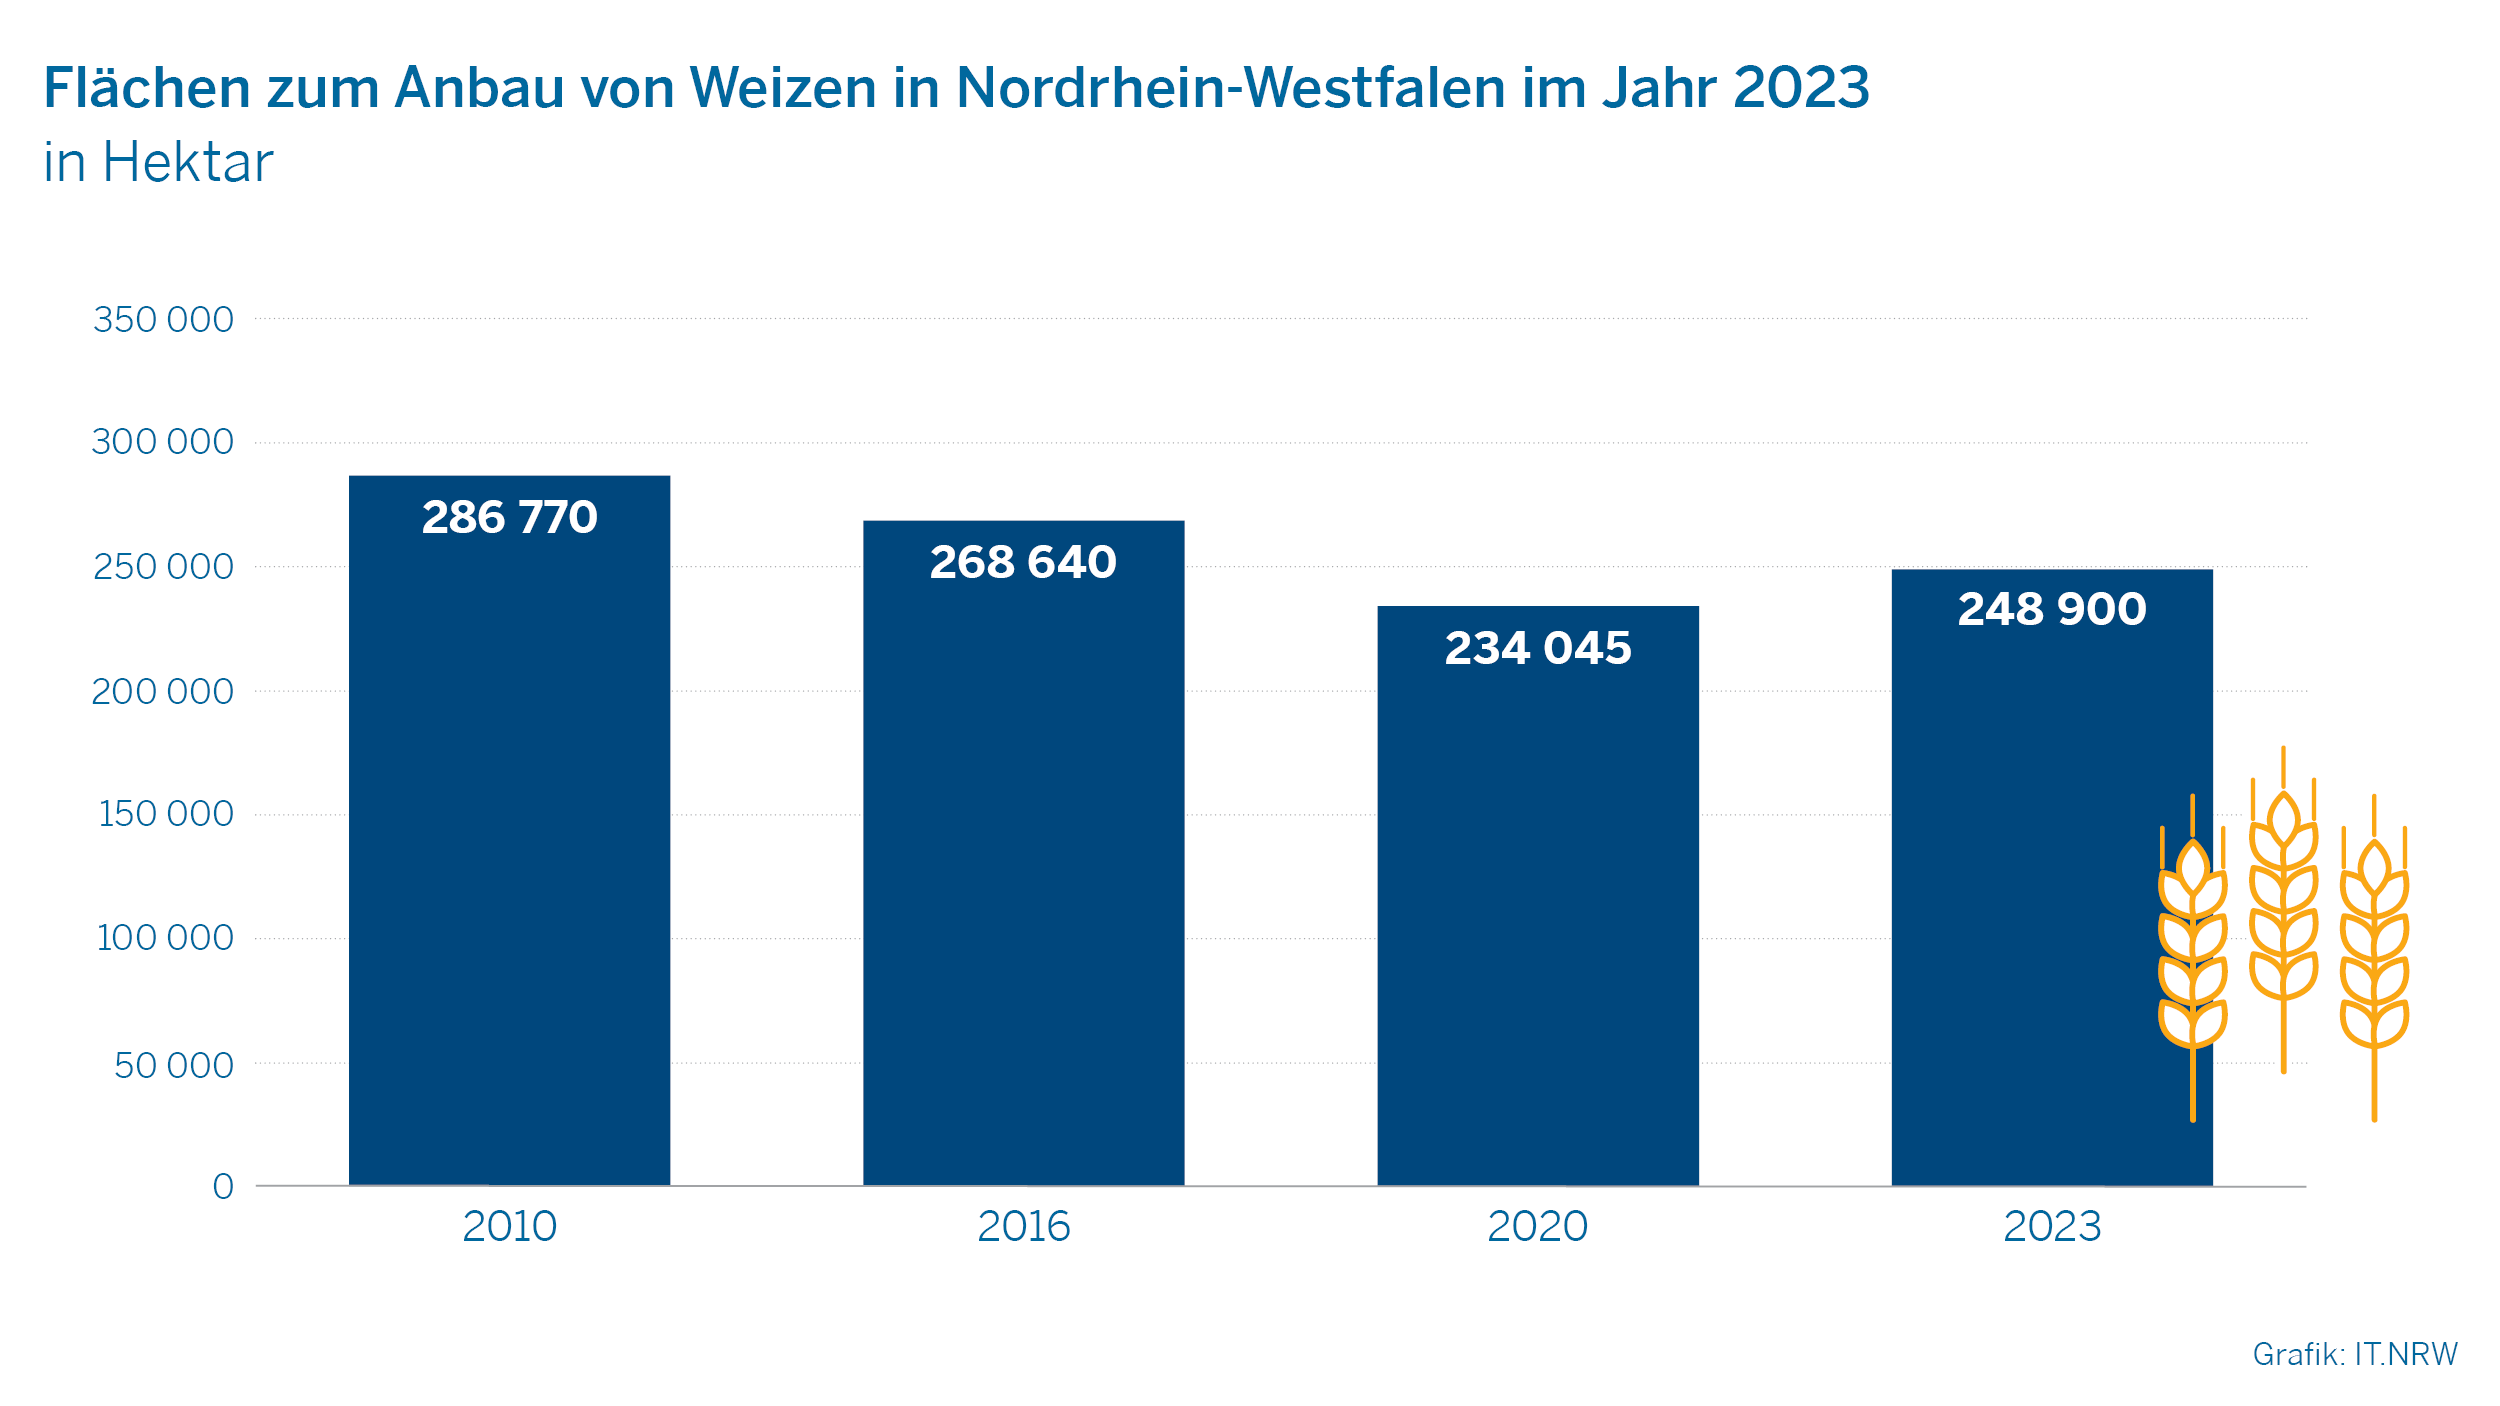 Flächen zum Anbau von Weizen in Nordrhein-Westfalen im Jahr 2023